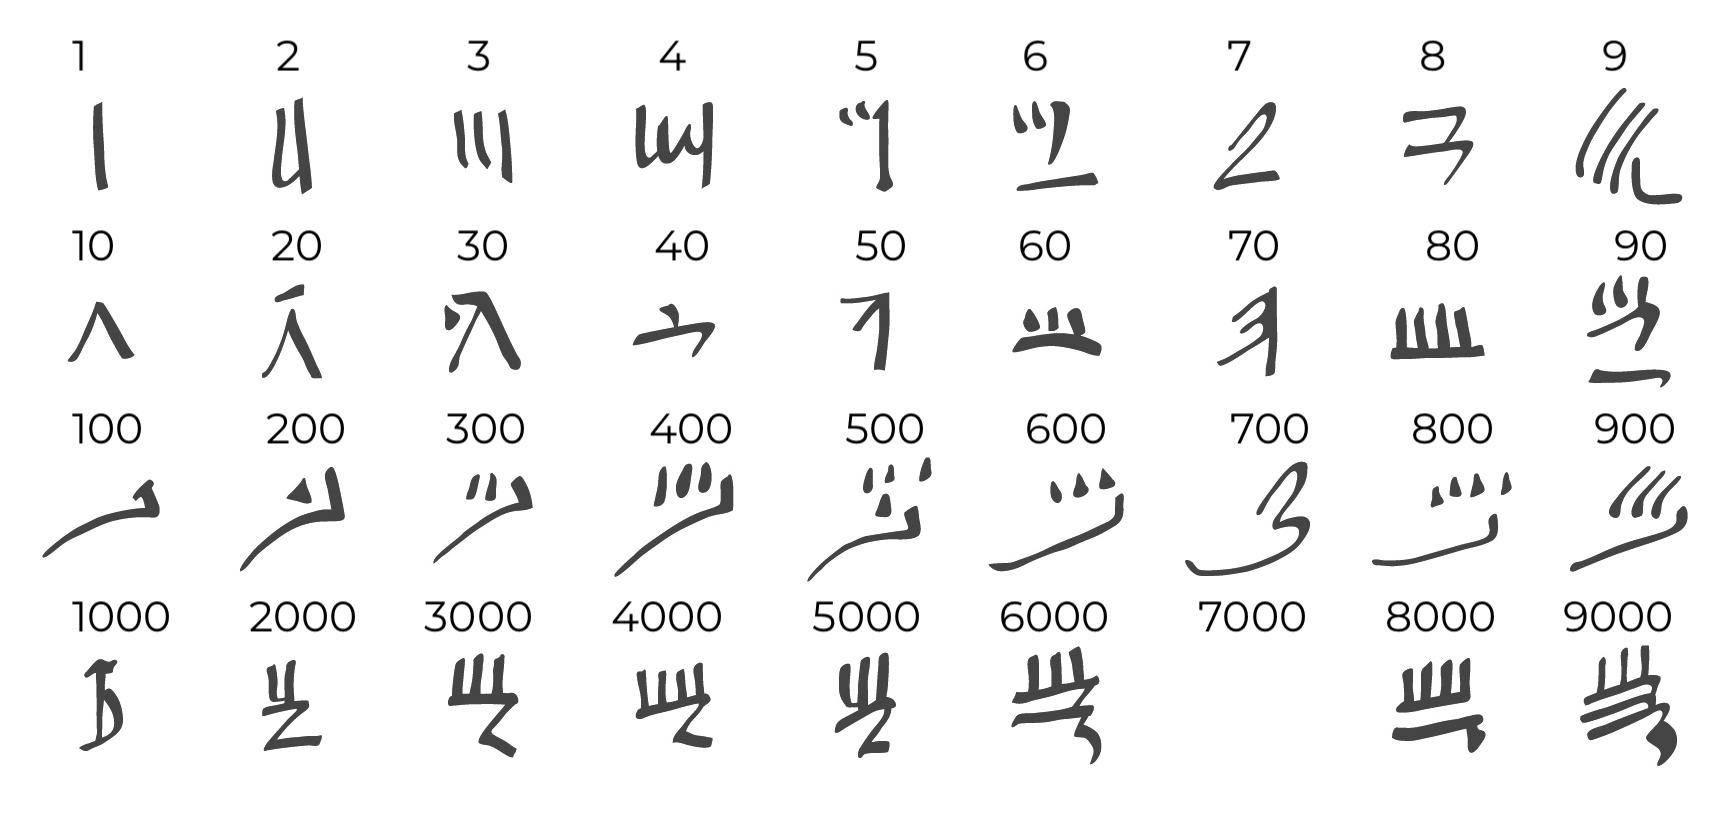 Simboli numerici della scrittura ieratica egizia.